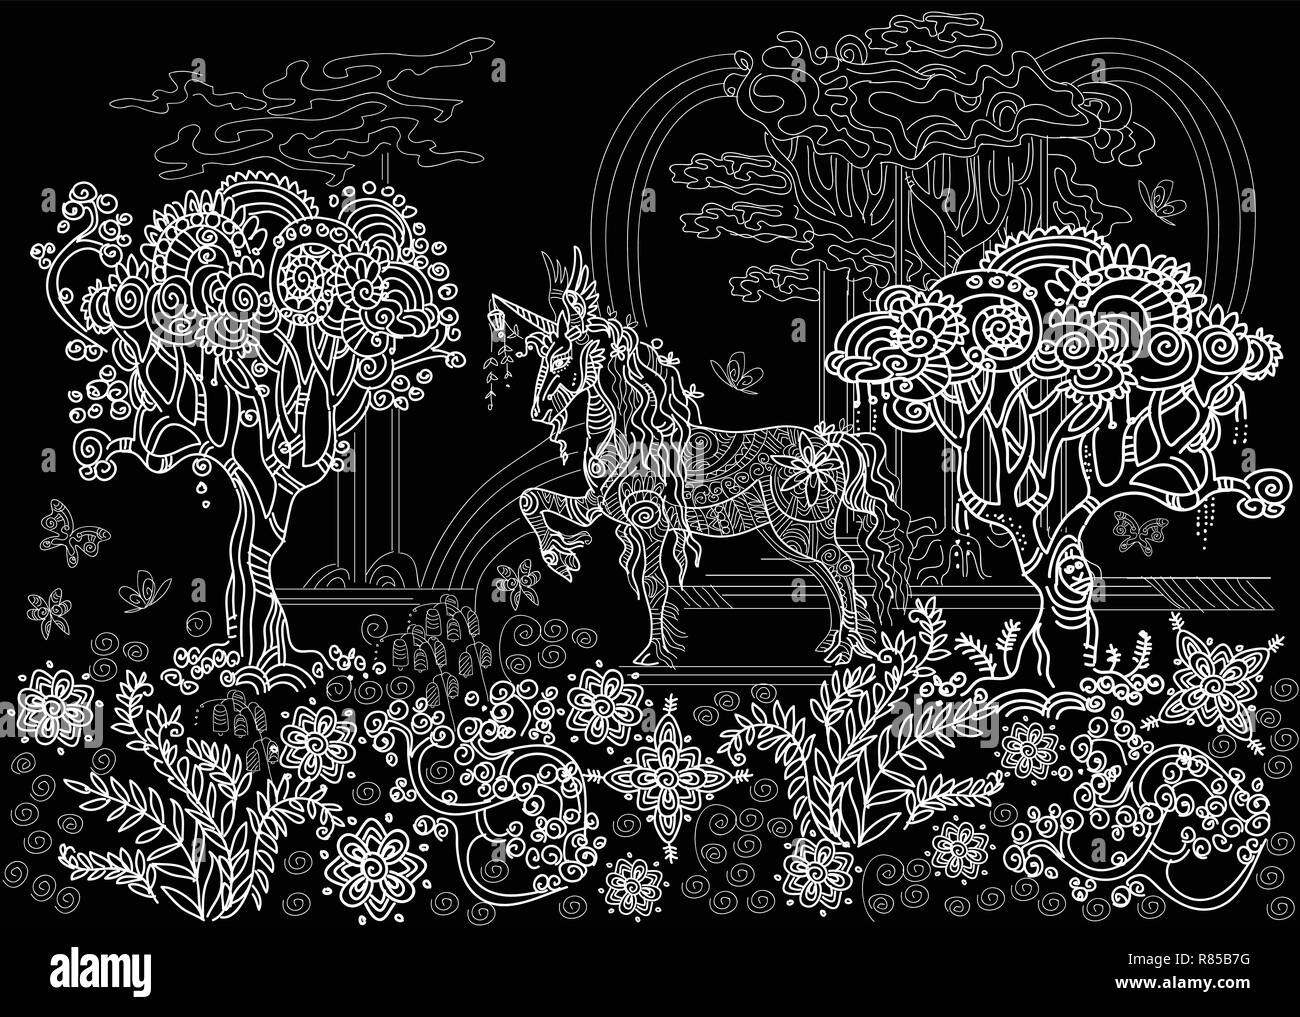 Vettore di disegno a mano illustrazione zentangle unicorn con alberi e piante in colore bianco isolato su sfondo nero. Doodle unicorn illustrazione con Illustrazione Vettoriale